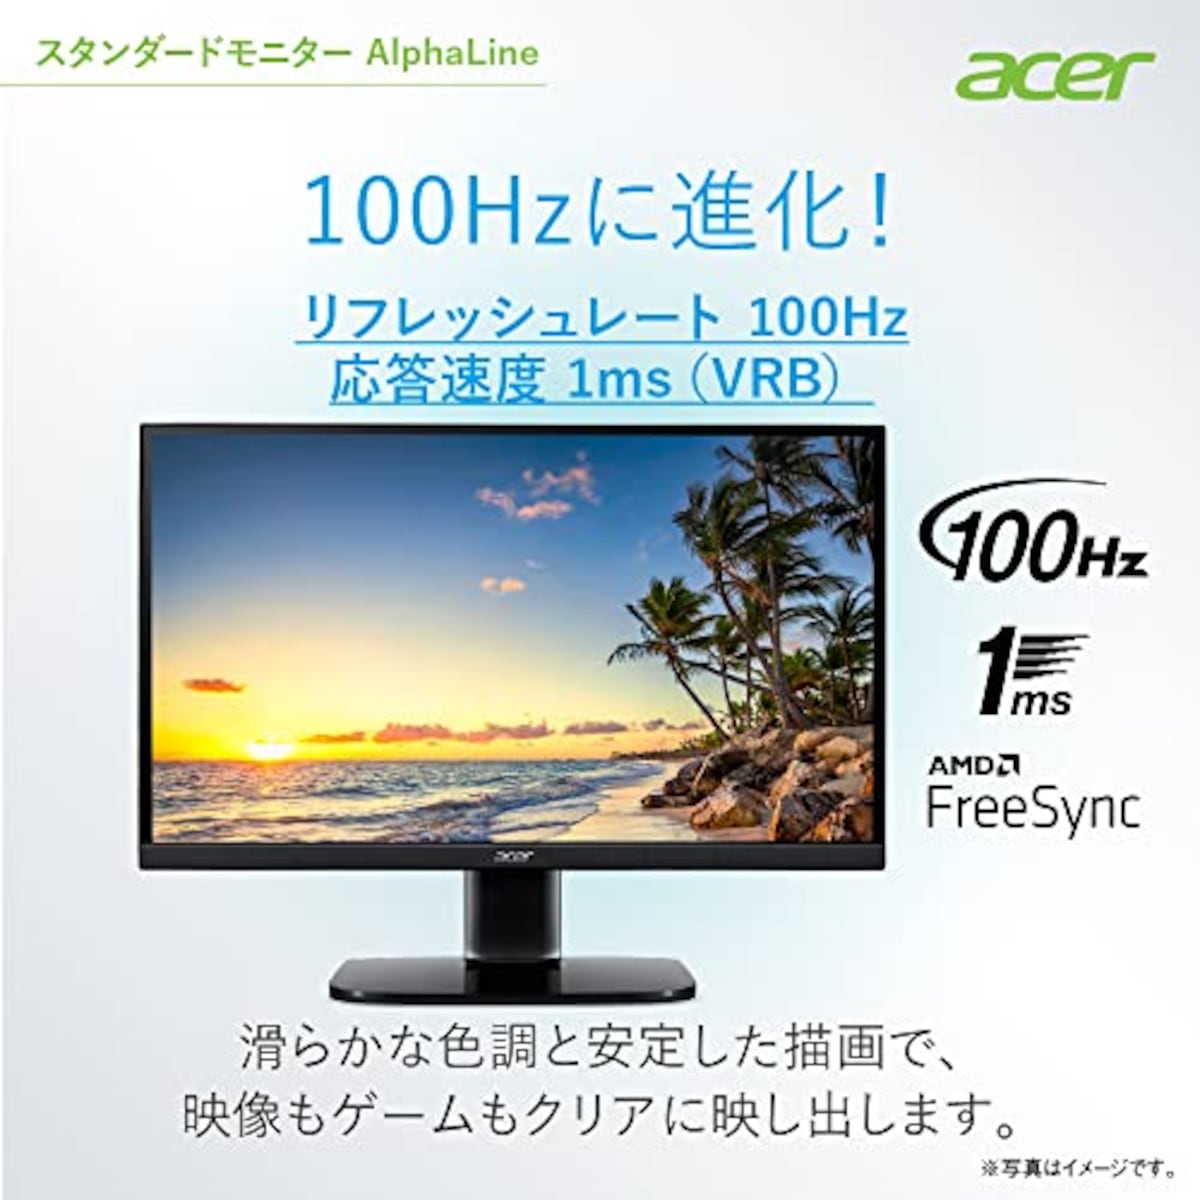  日本エイサー 【Amazon.co.jp限定】 Acer モニター AlphaLine KA272Ebmix 27インチ IPS 非光沢 フルHD 100Hz 1ms(VRB) HDMI ミニD-Sub15 VESAマウント対応 スピーカー内蔵 ヘッドホン端子 AMD FreeSync画像3 